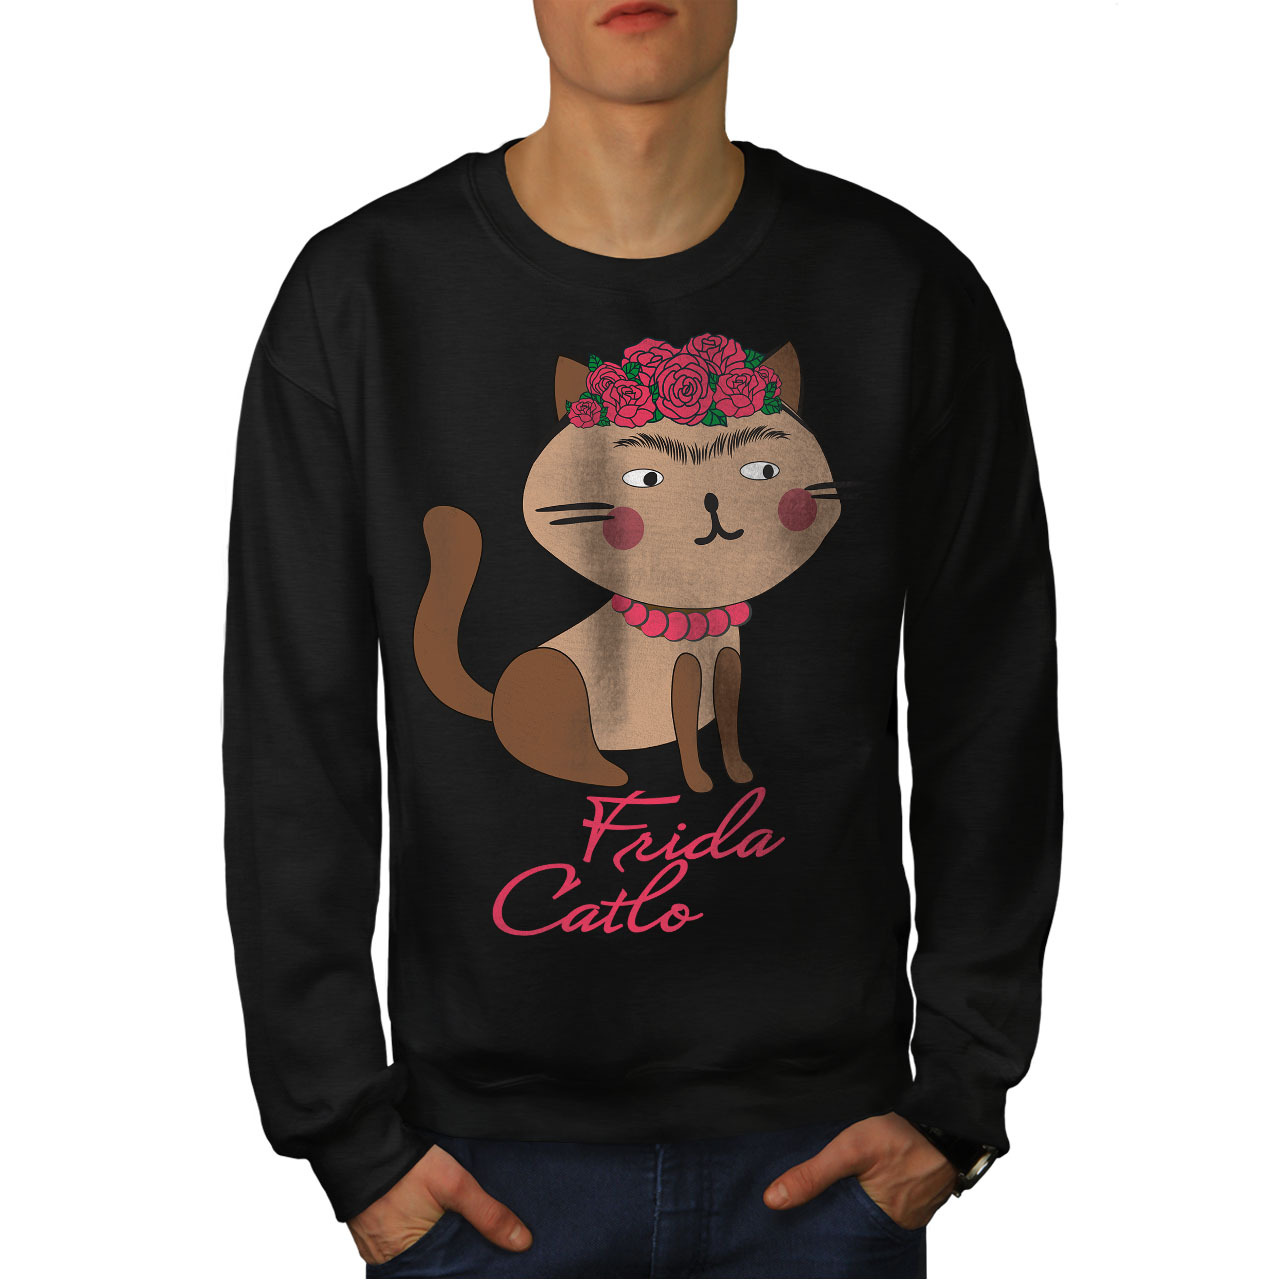 Primary image for Frida Kahlo Cat Jumper Funny Men Sweatshirt